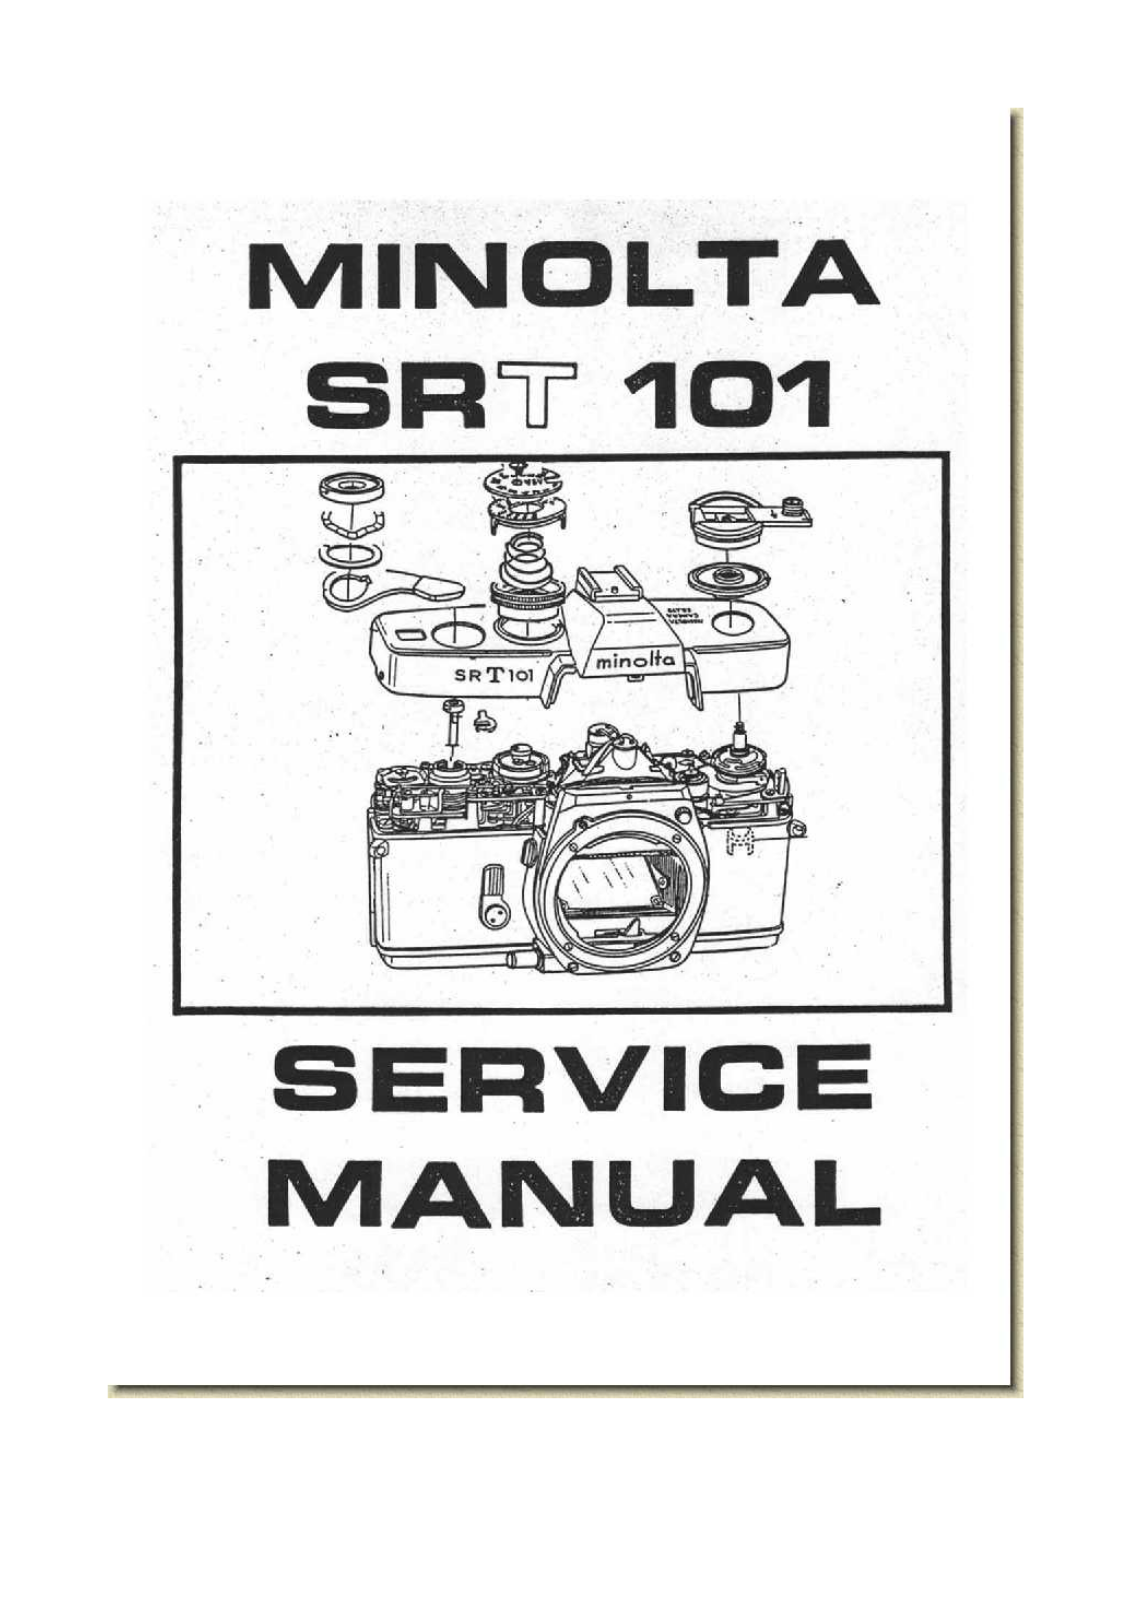 MINOLTA SR-T 101 Service Manual